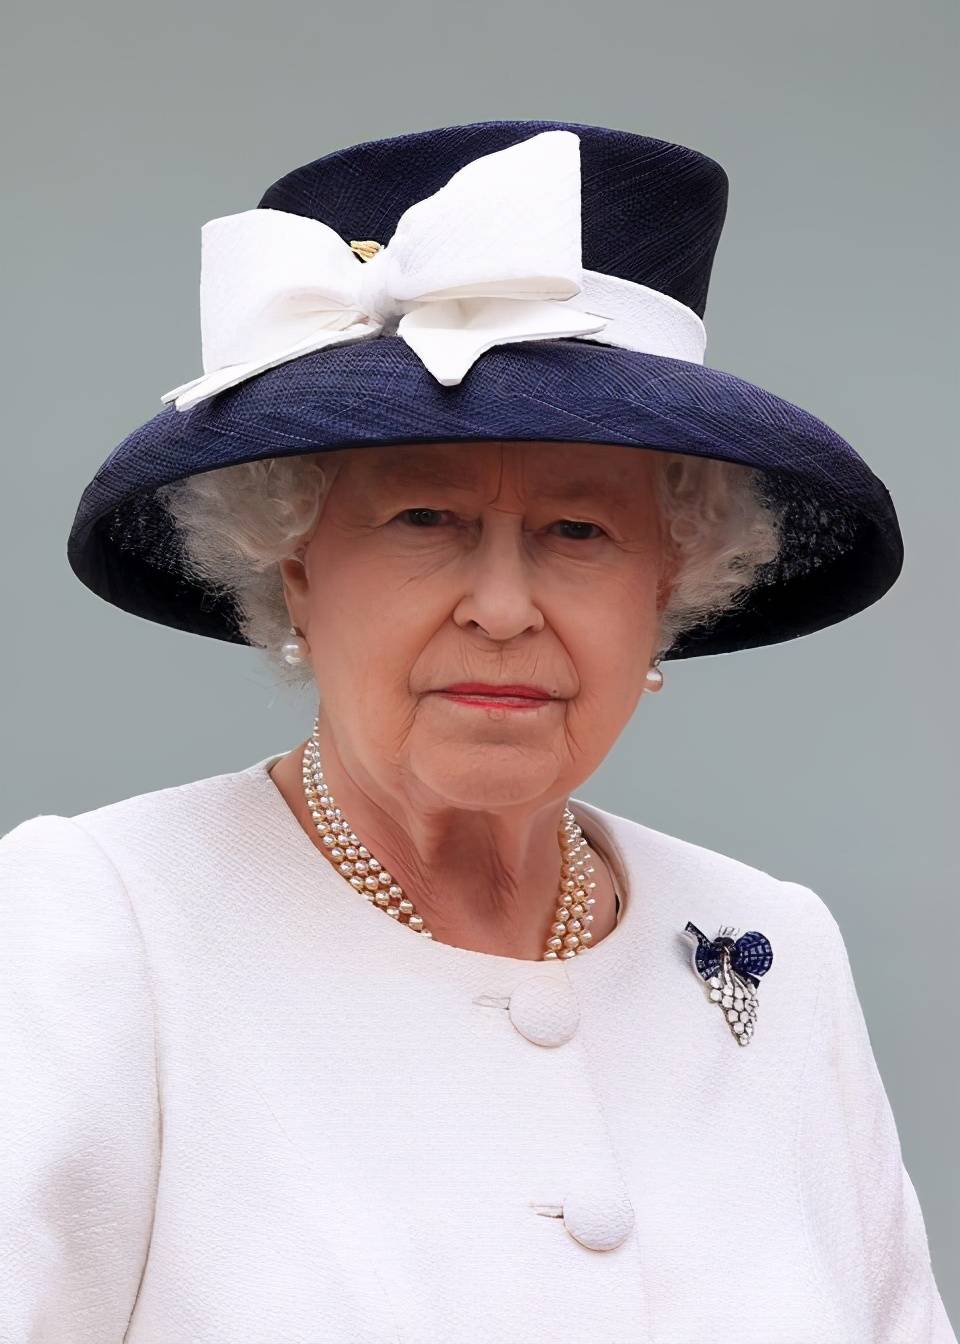 王室胸针收藏大户是她!英女王最爱用胸针暗示心意